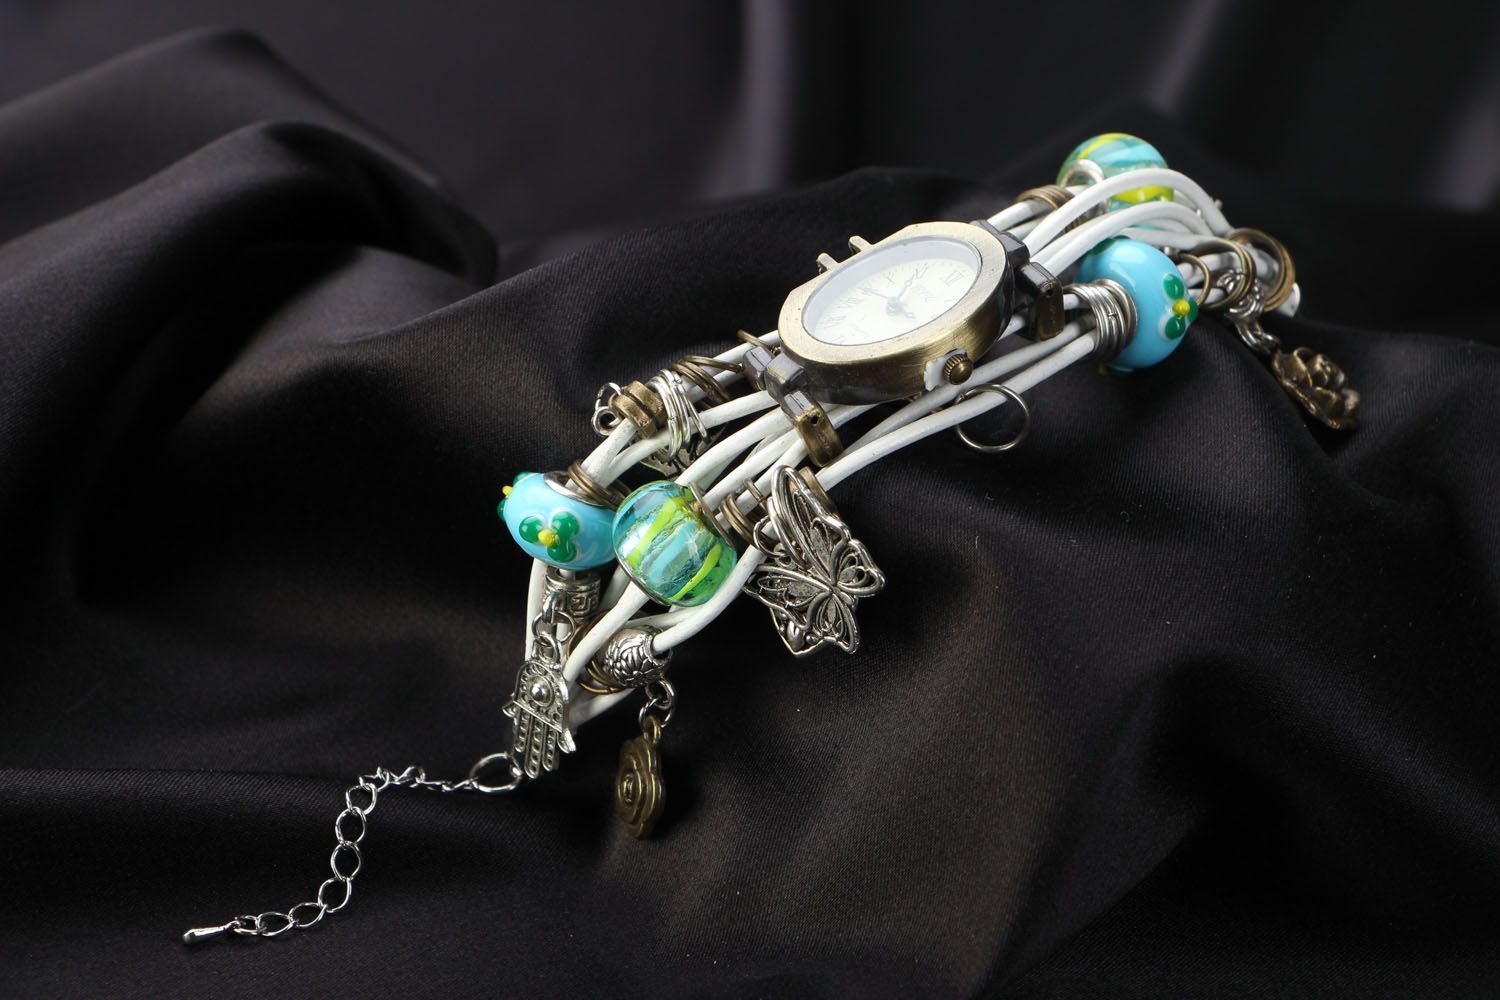 Необычные часы ручной работы оригинальные часы для стильной женщины в подарок фото 4